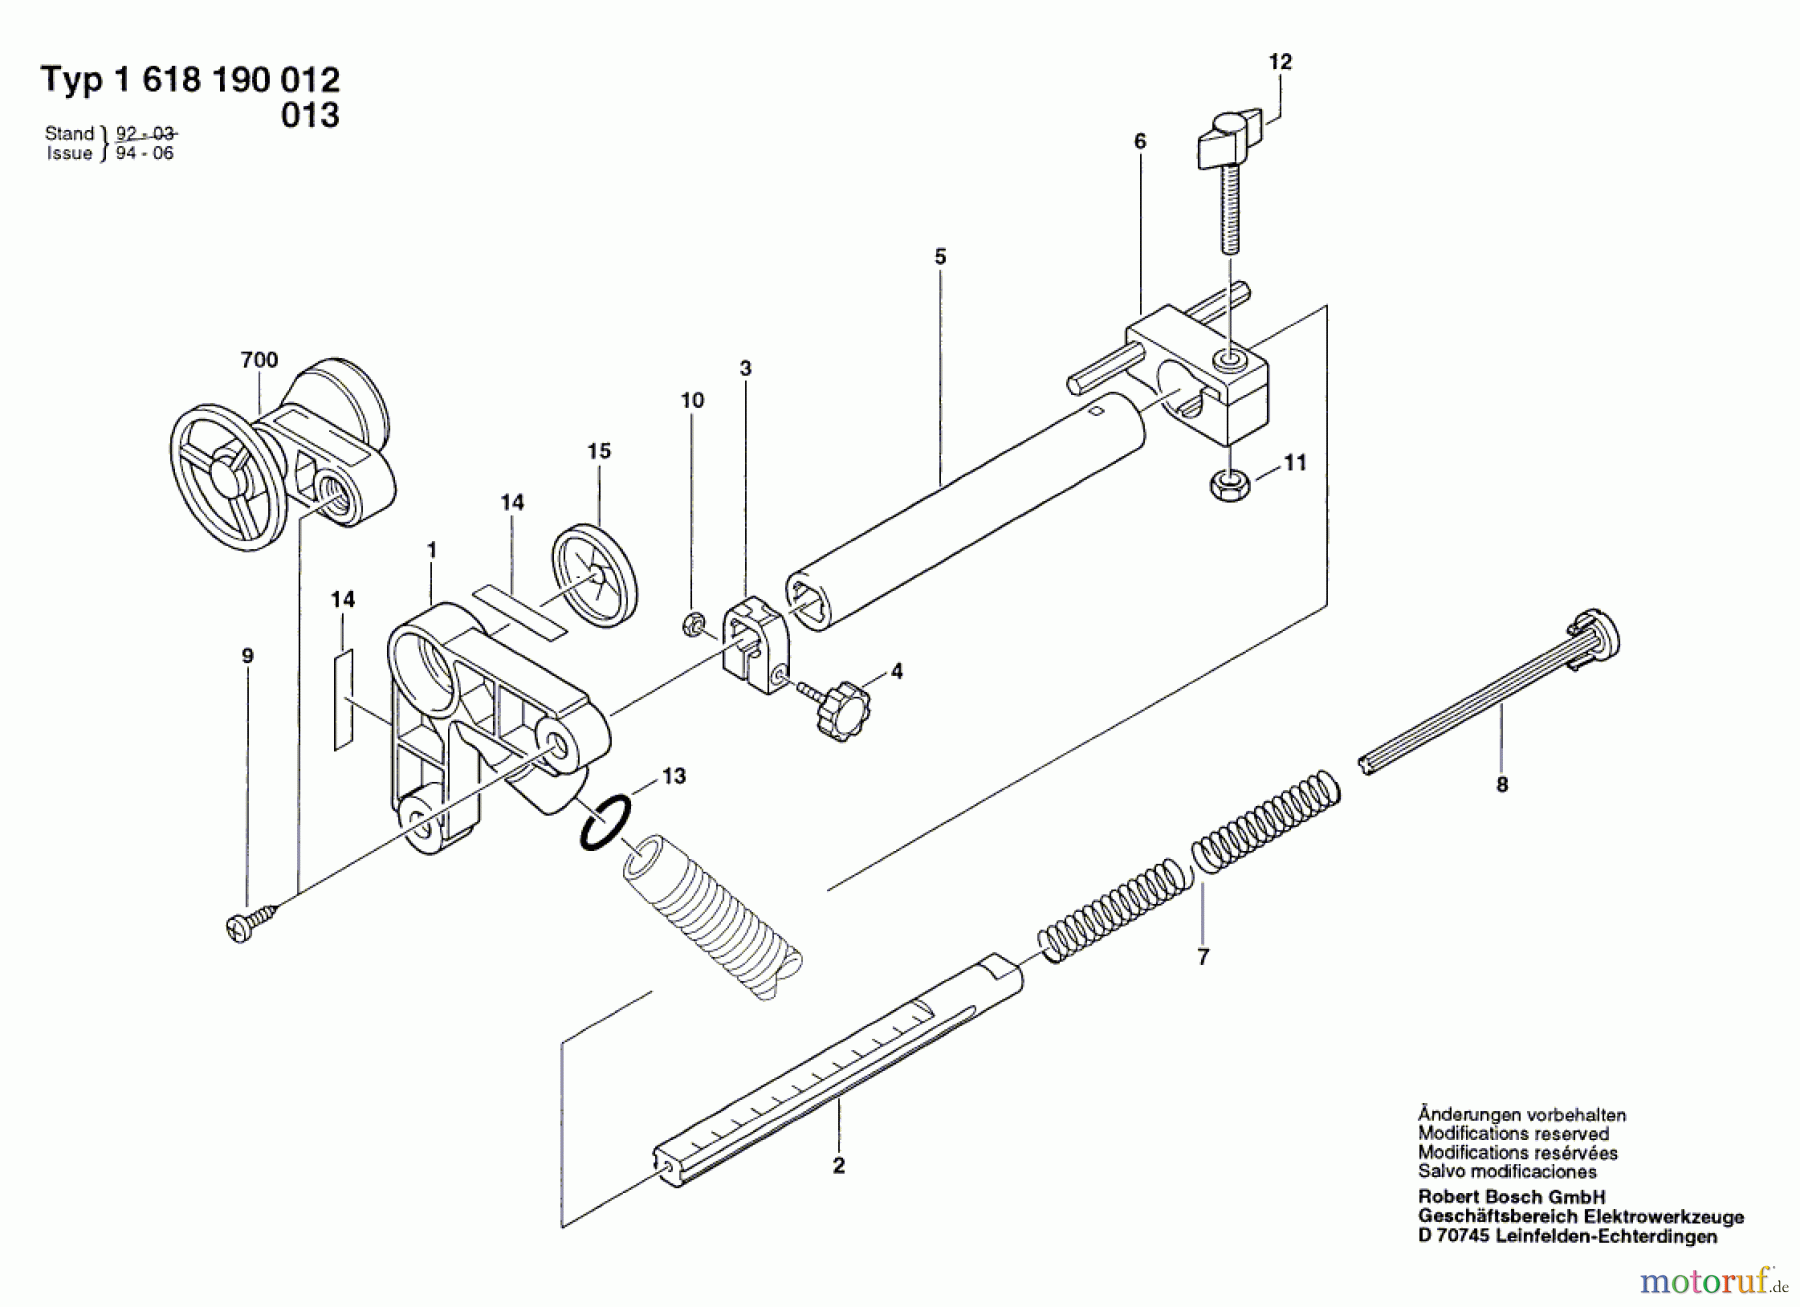  Bosch Werkzeug Absaugvorrichtung ---- Seite 1